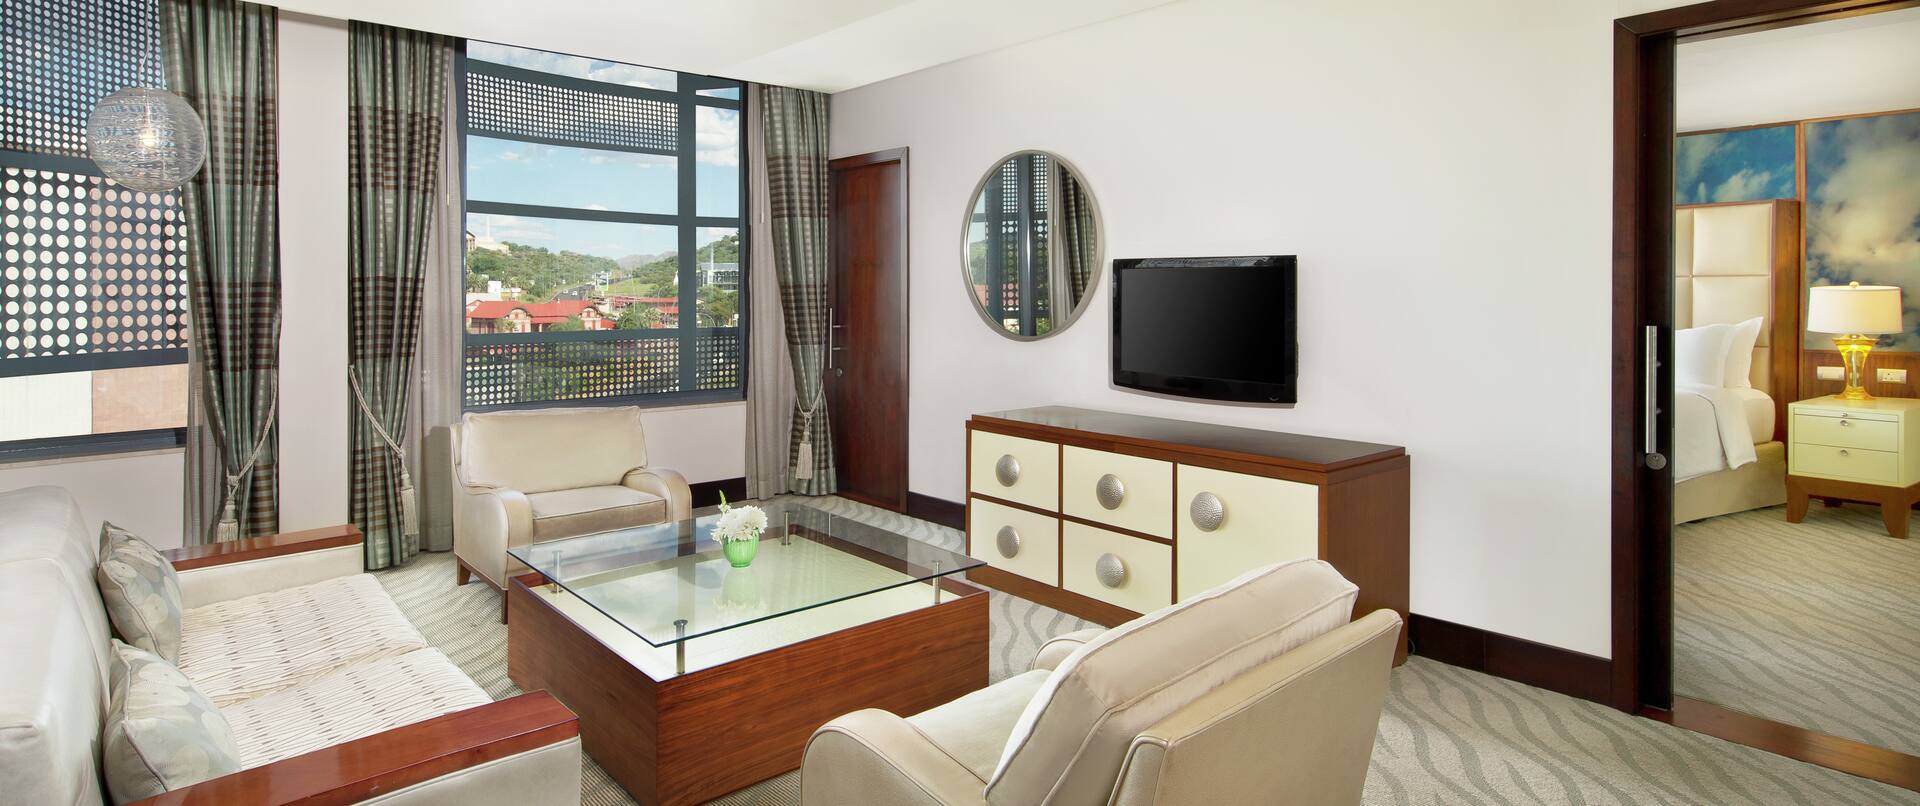 Sofa, Stuhl, Tisch und Fernseher in der Diplomatensuite mit offenem Durchgang und Blick auf das Kingsize-Bett